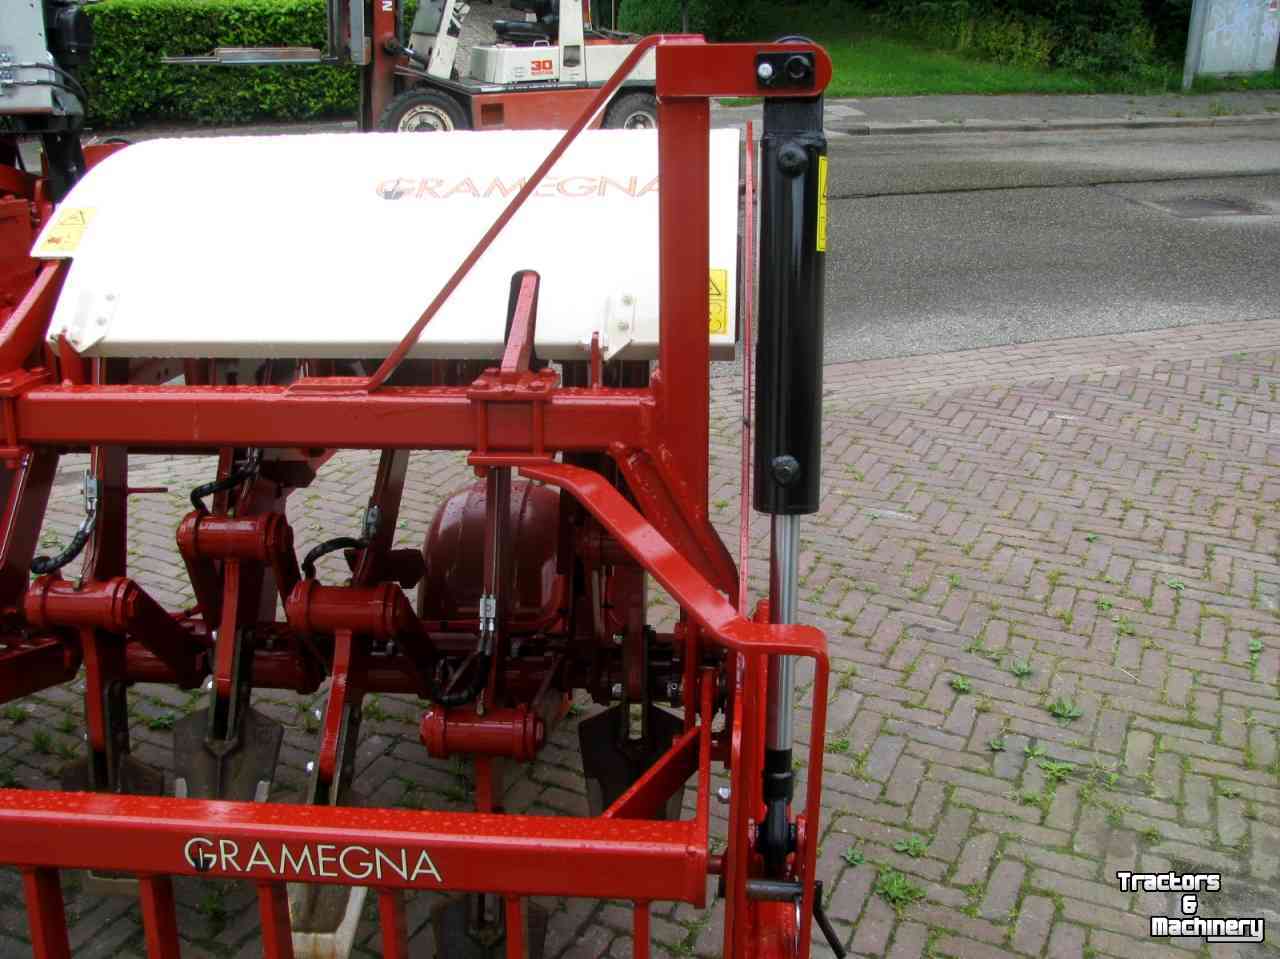 Spatenmaschine Gramegna V86/36